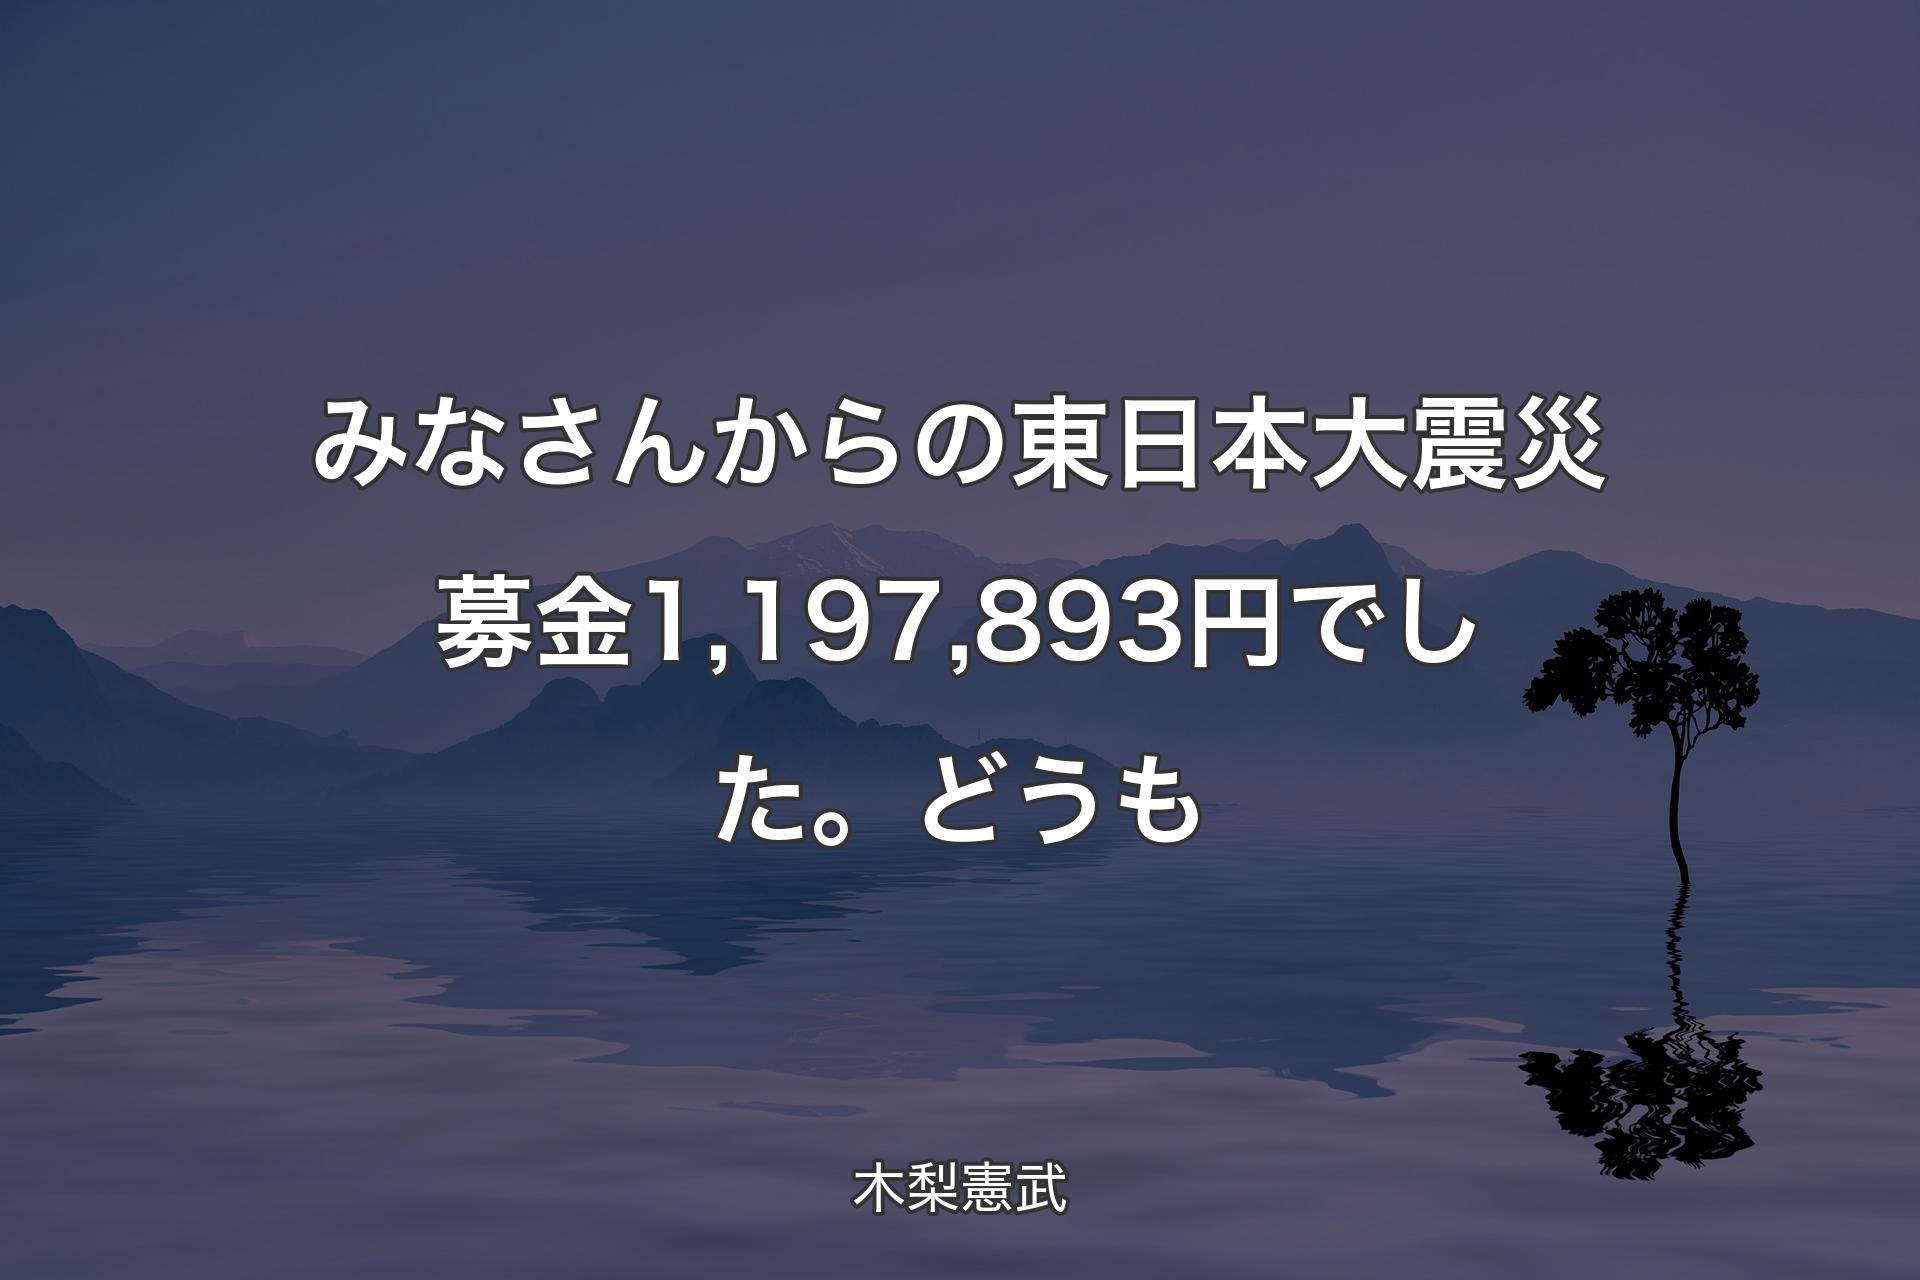 みなさんからの東日本大震災募金1,197,893円でした。どうも - 木梨憲武